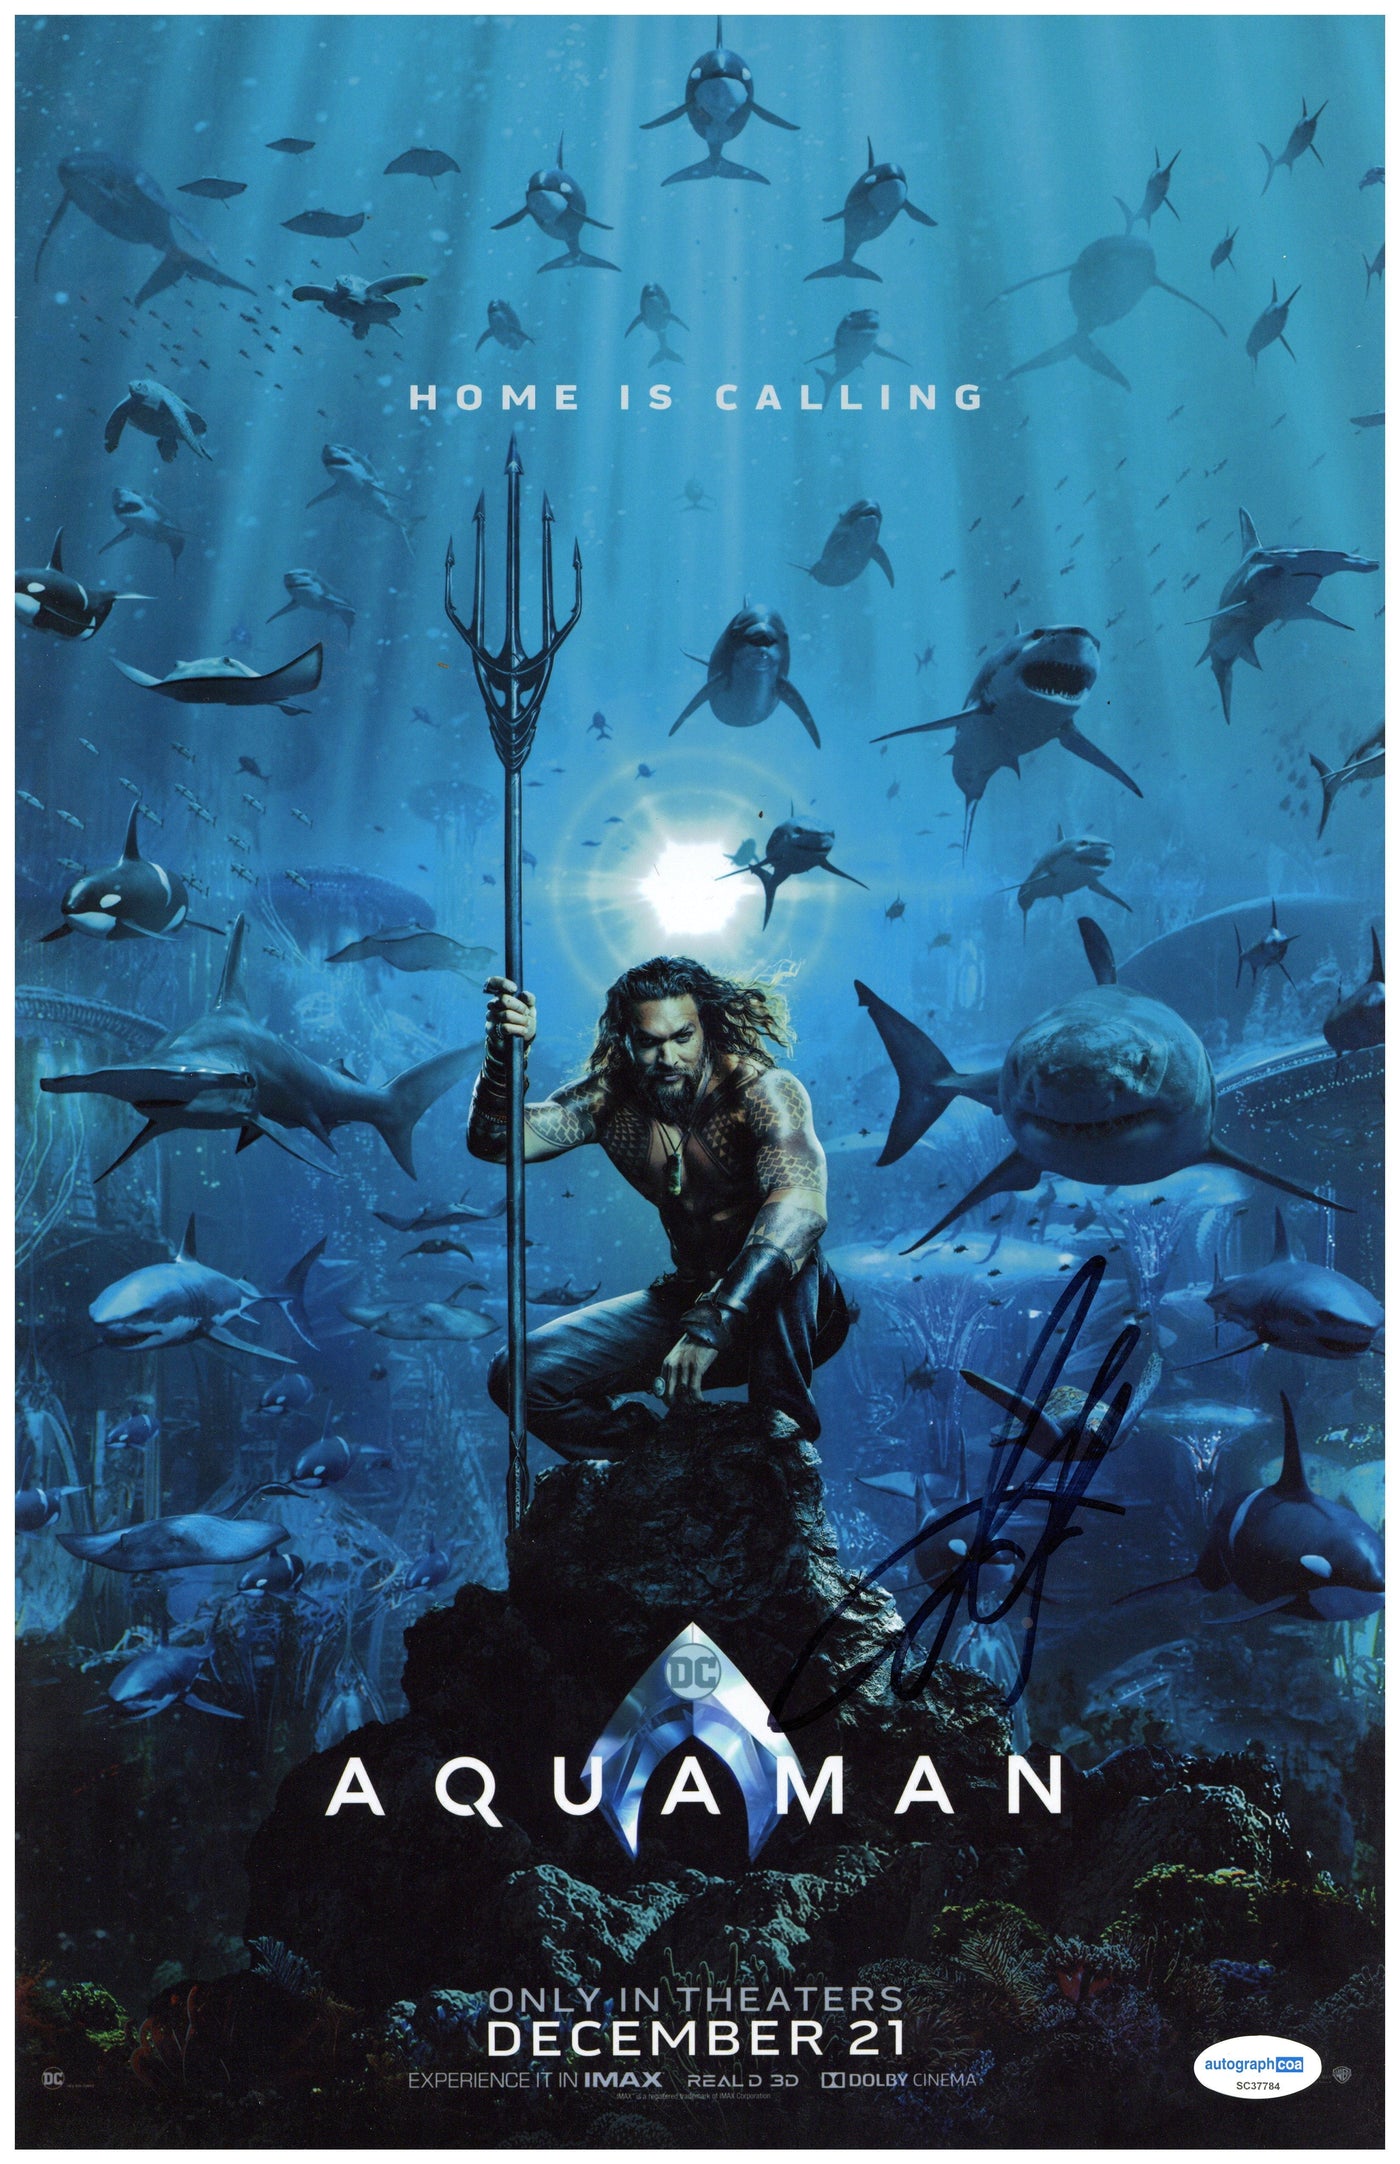 Jason Momoa Signed 11x17 Photo Aquaman Autographed ACOA